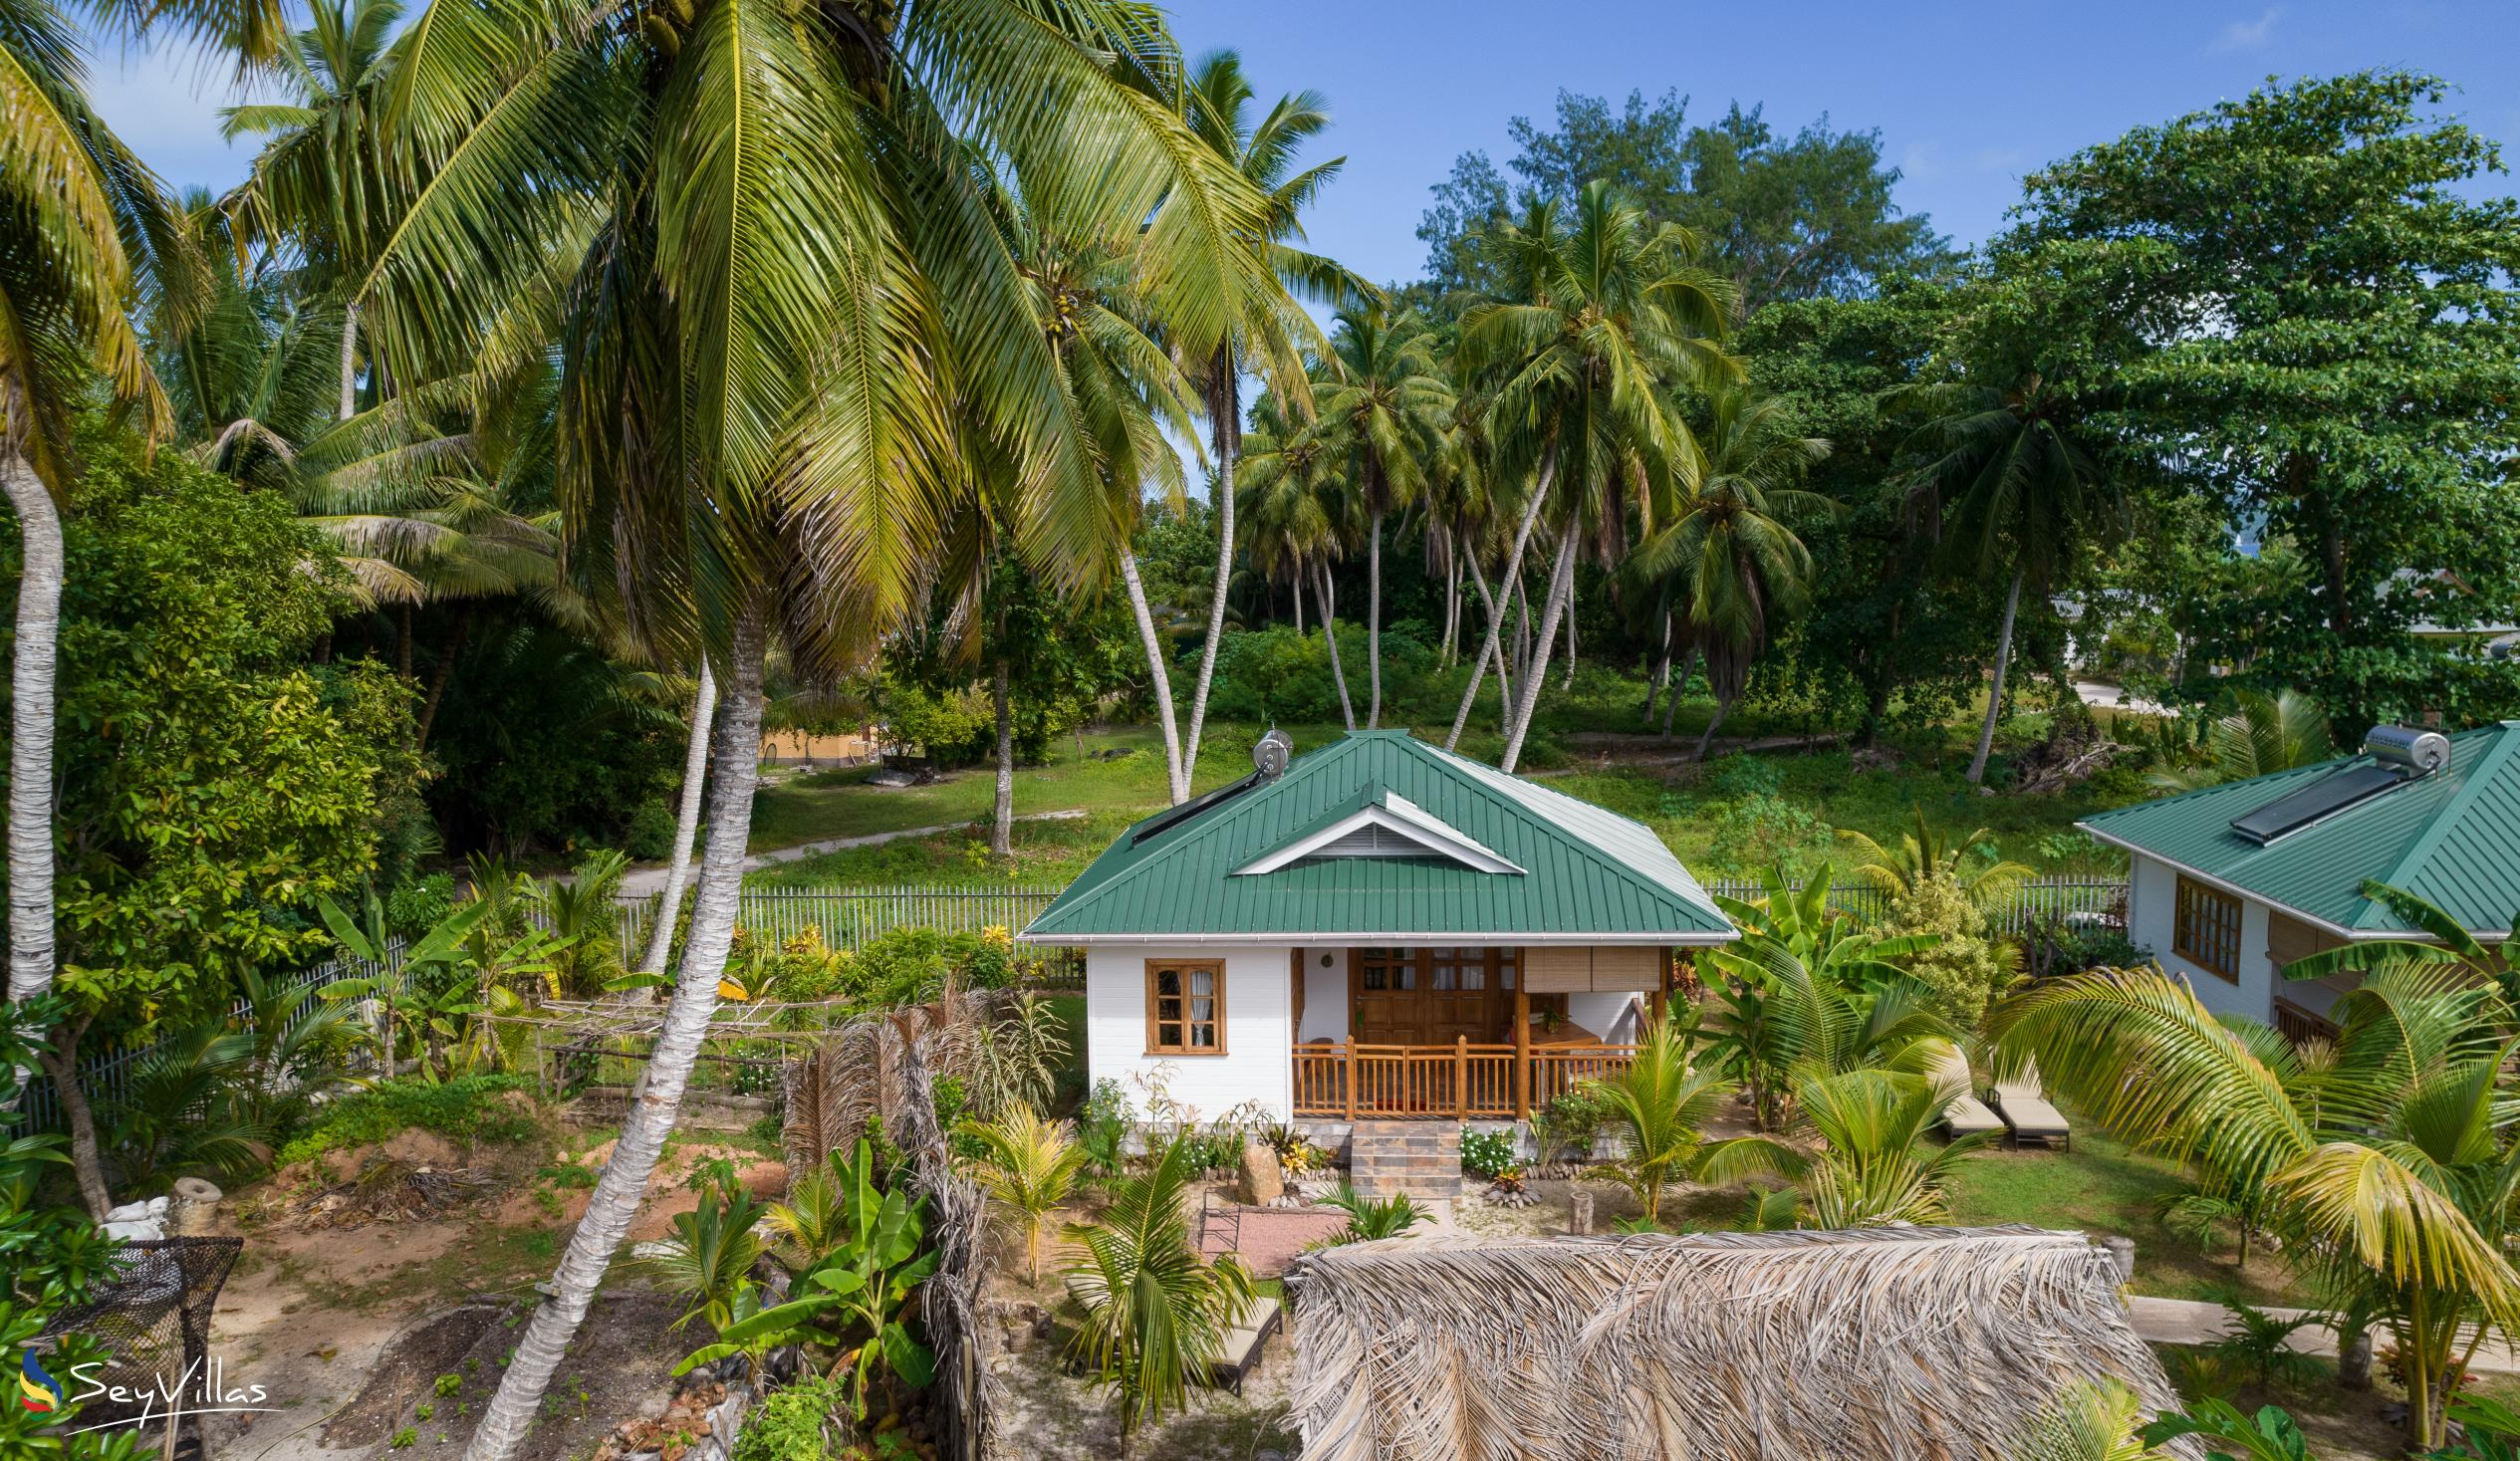 Foto 4: Coco de Mahi - Extérieur - La Digue (Seychelles)